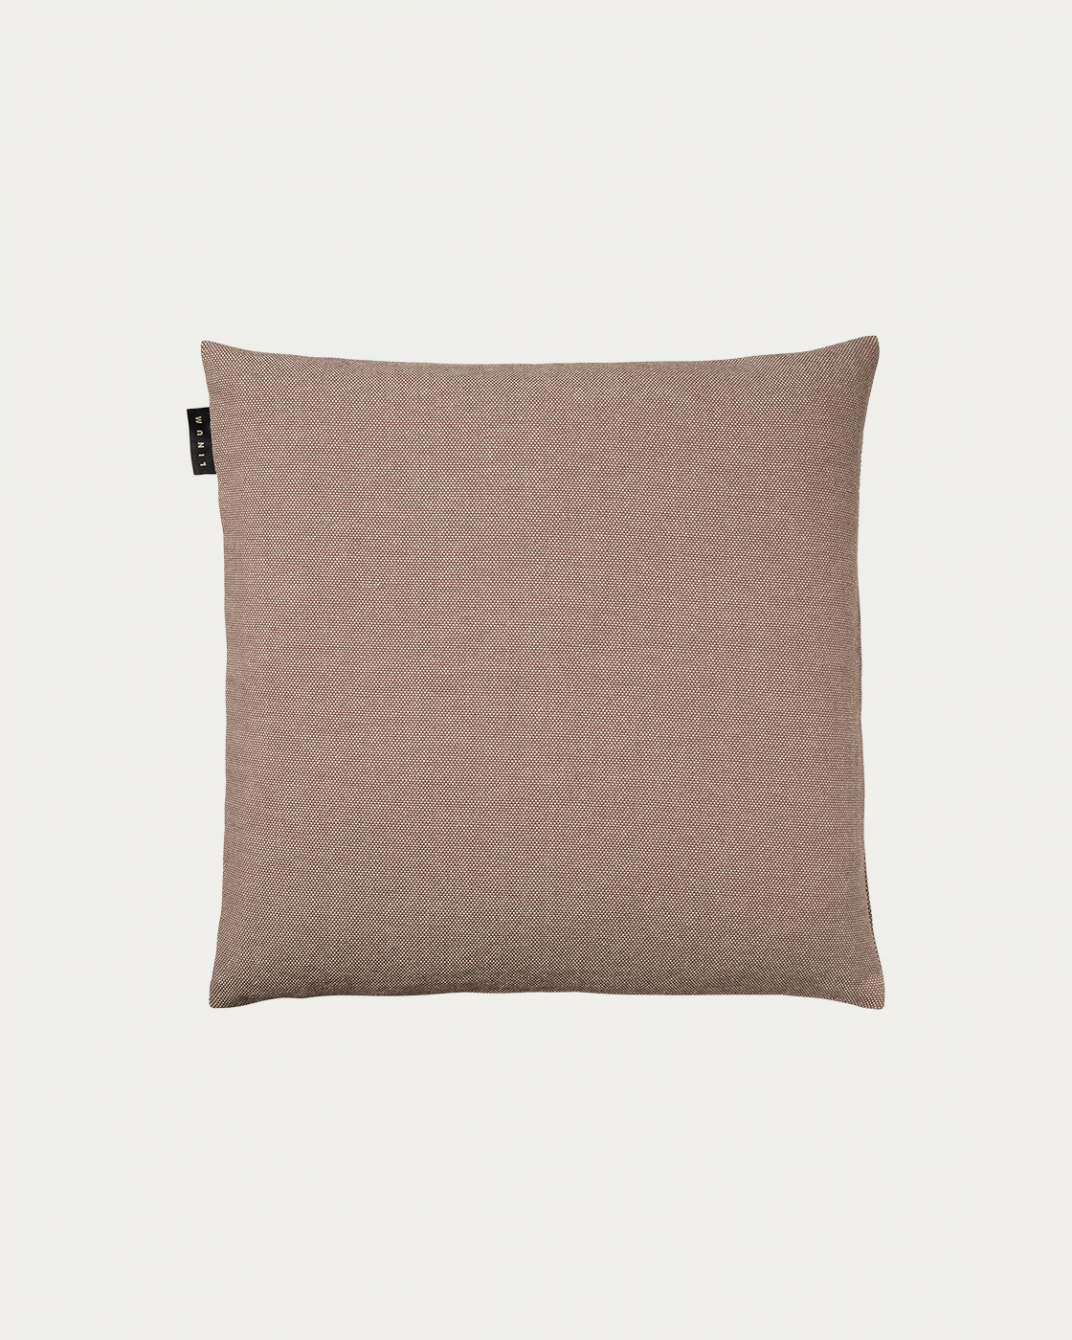 PEPPER Cushion cover 40x40 cm Dark mole brown